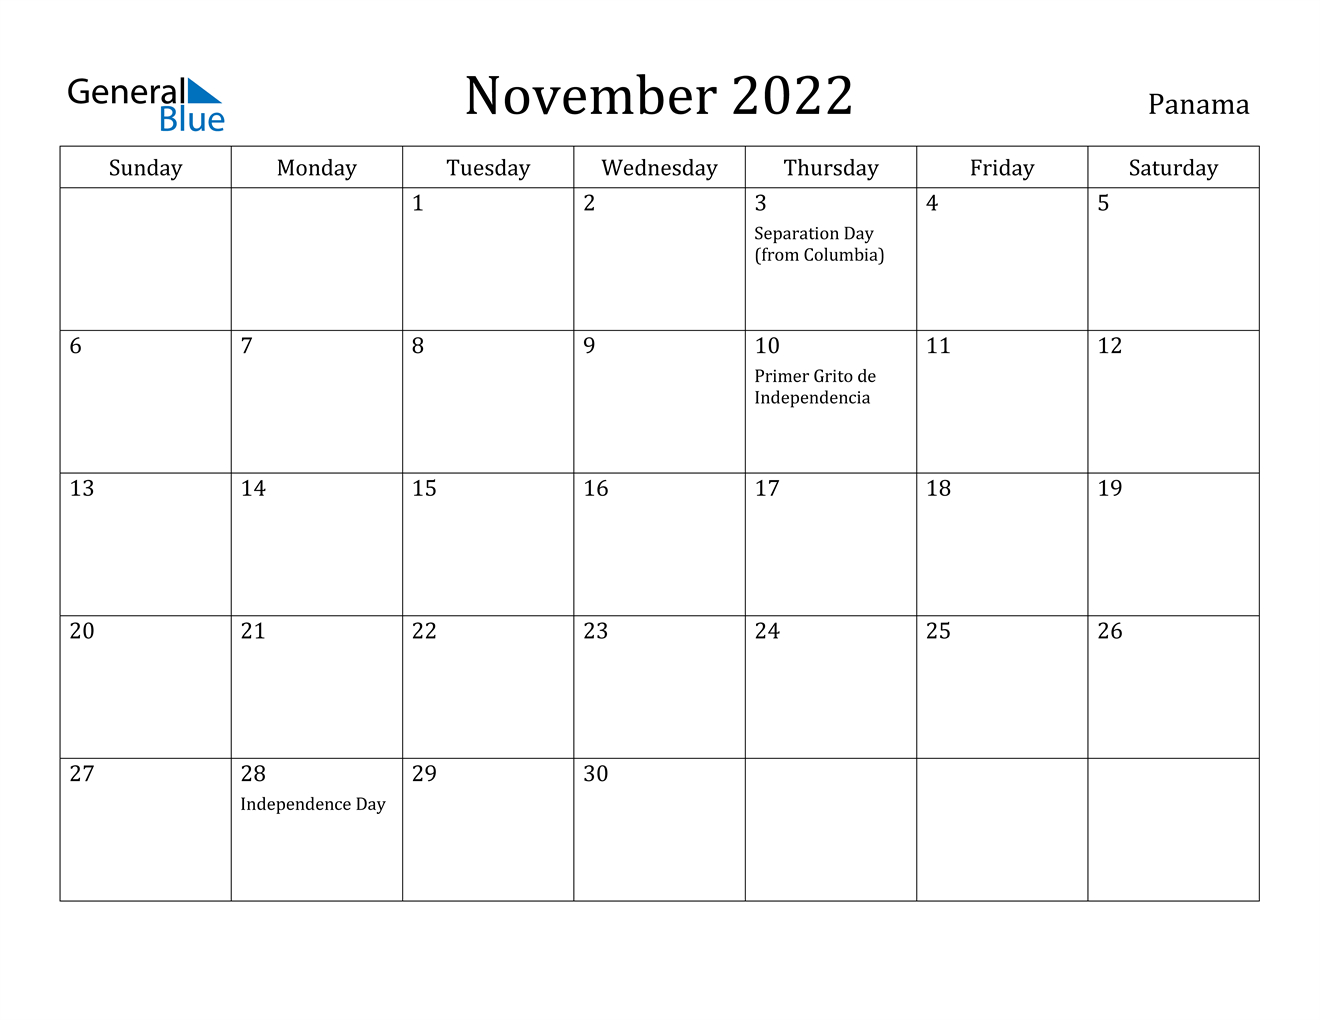 November 2022 Calendar - Panama